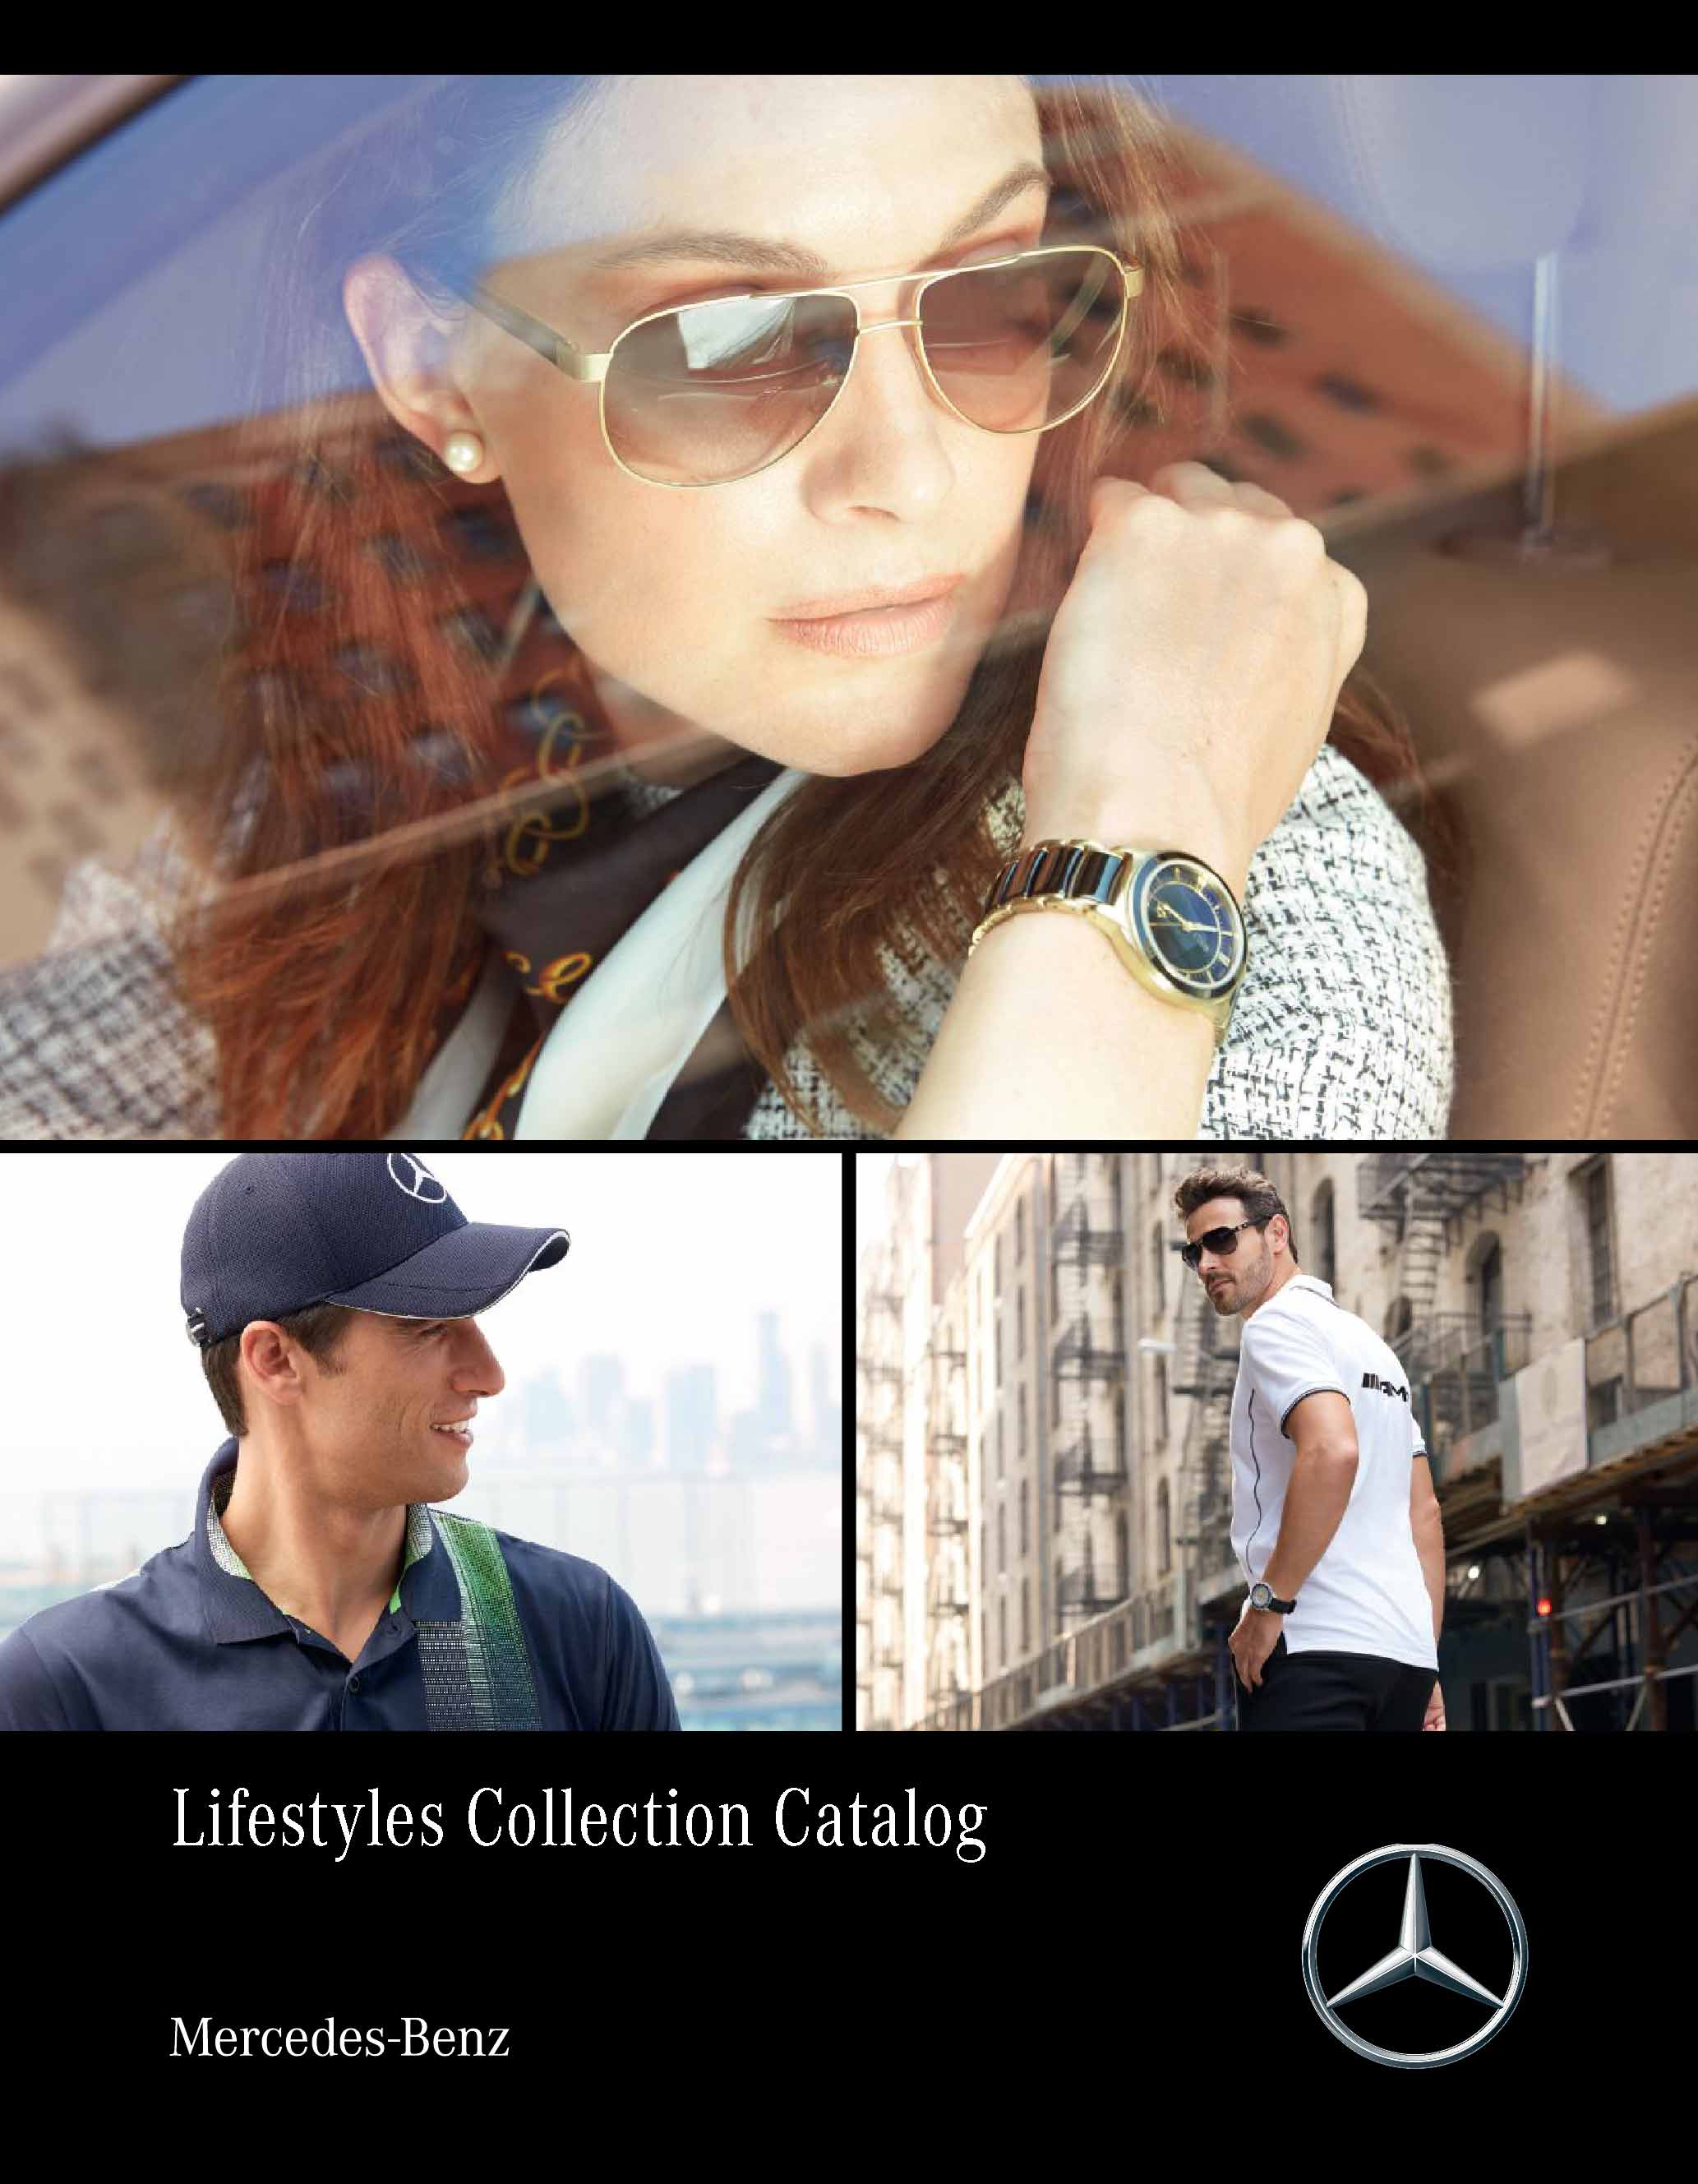 Advertising Lifestyle Photography - Mercedes Benz  I Greg Sorensen I Fashion & Beauty Photographer I NYC